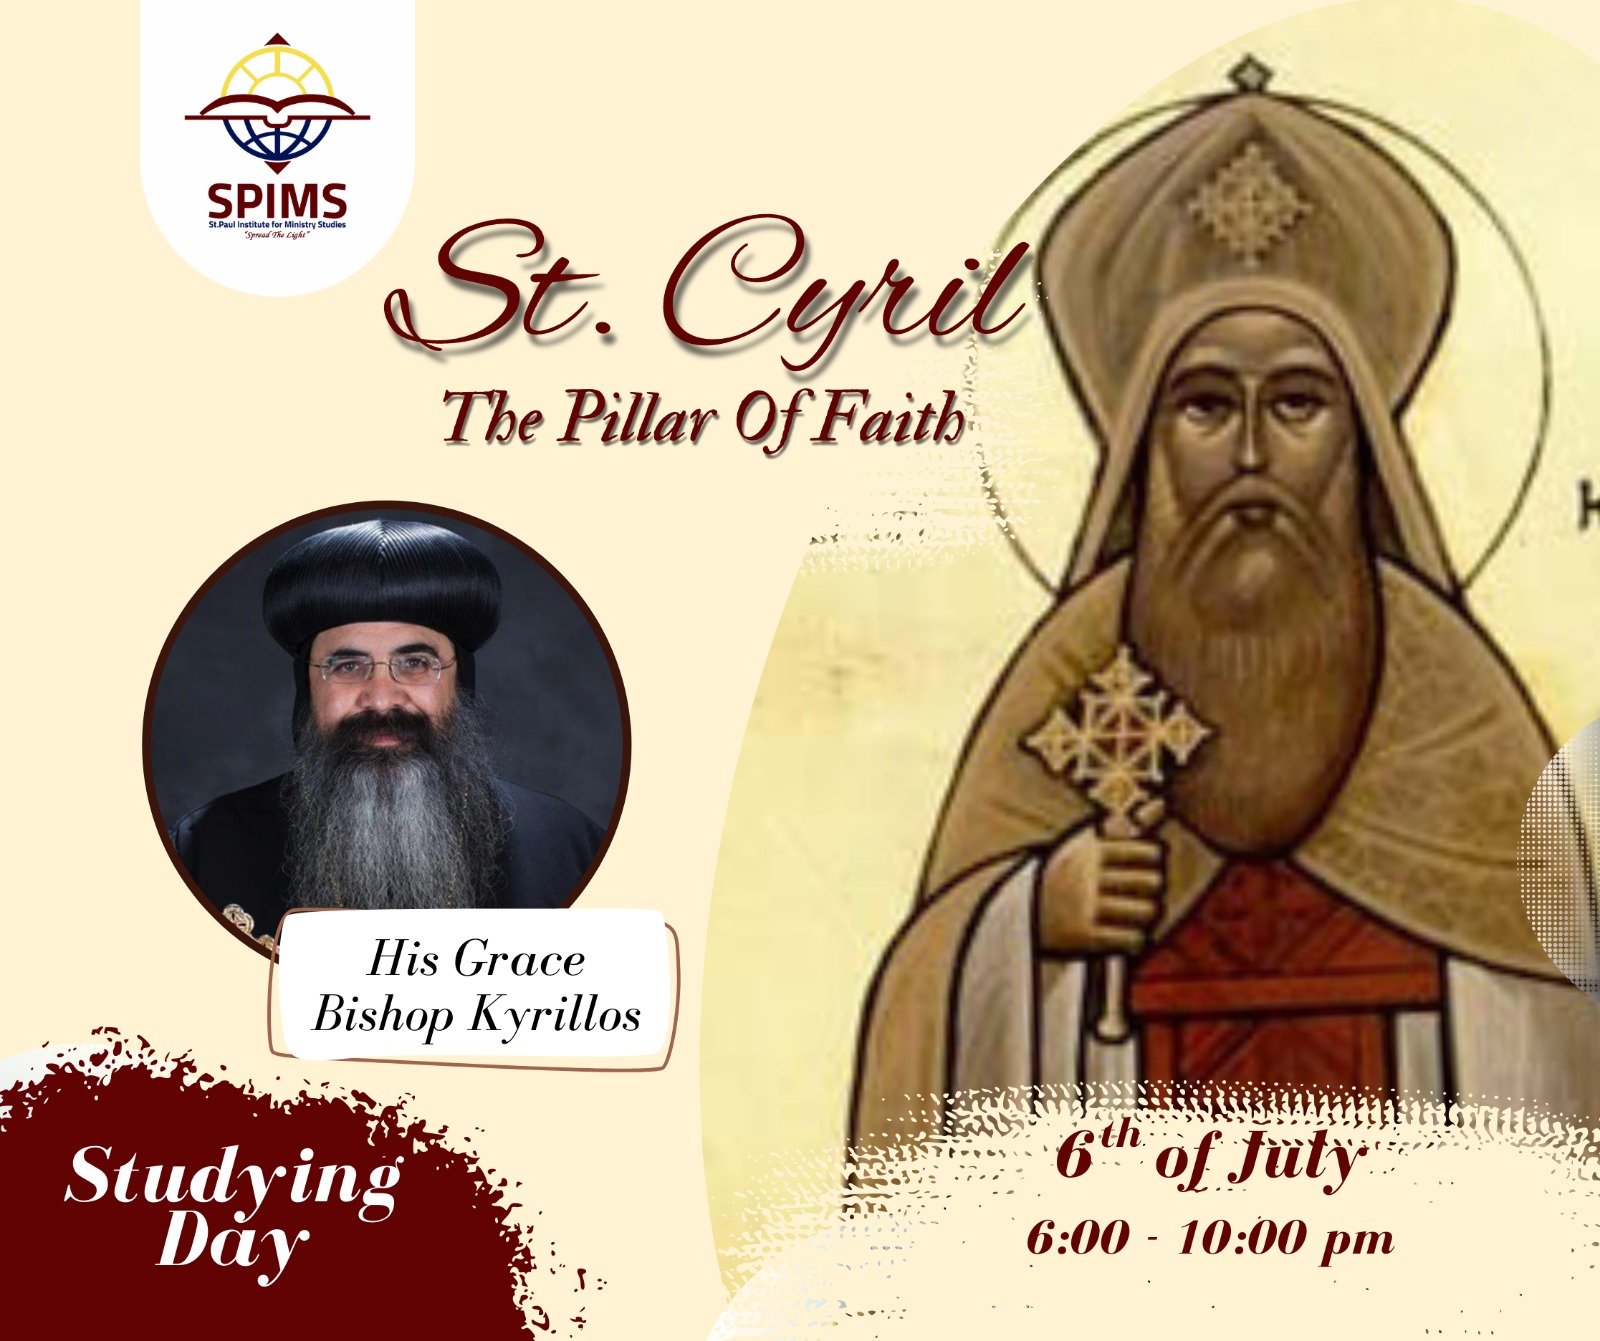 St. Cyril The Pillar of Faith